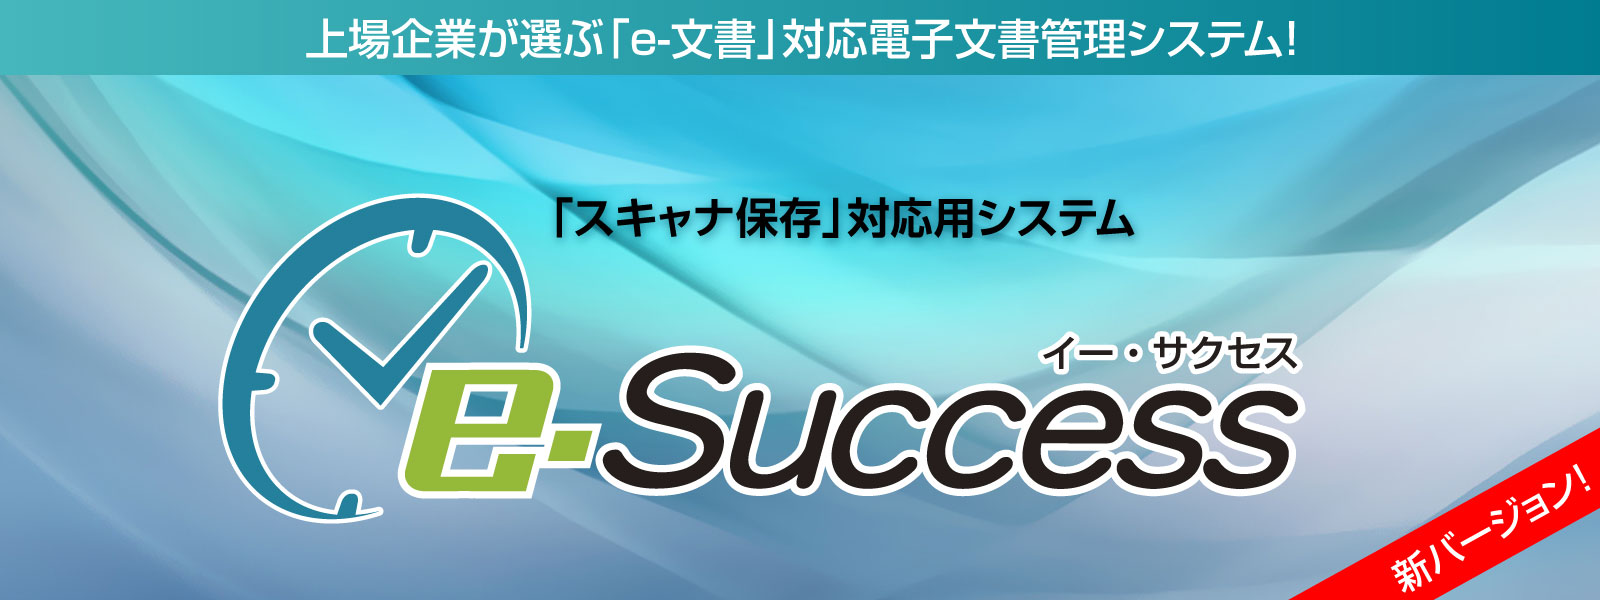 スキャナ保存対応用システム  e-Success